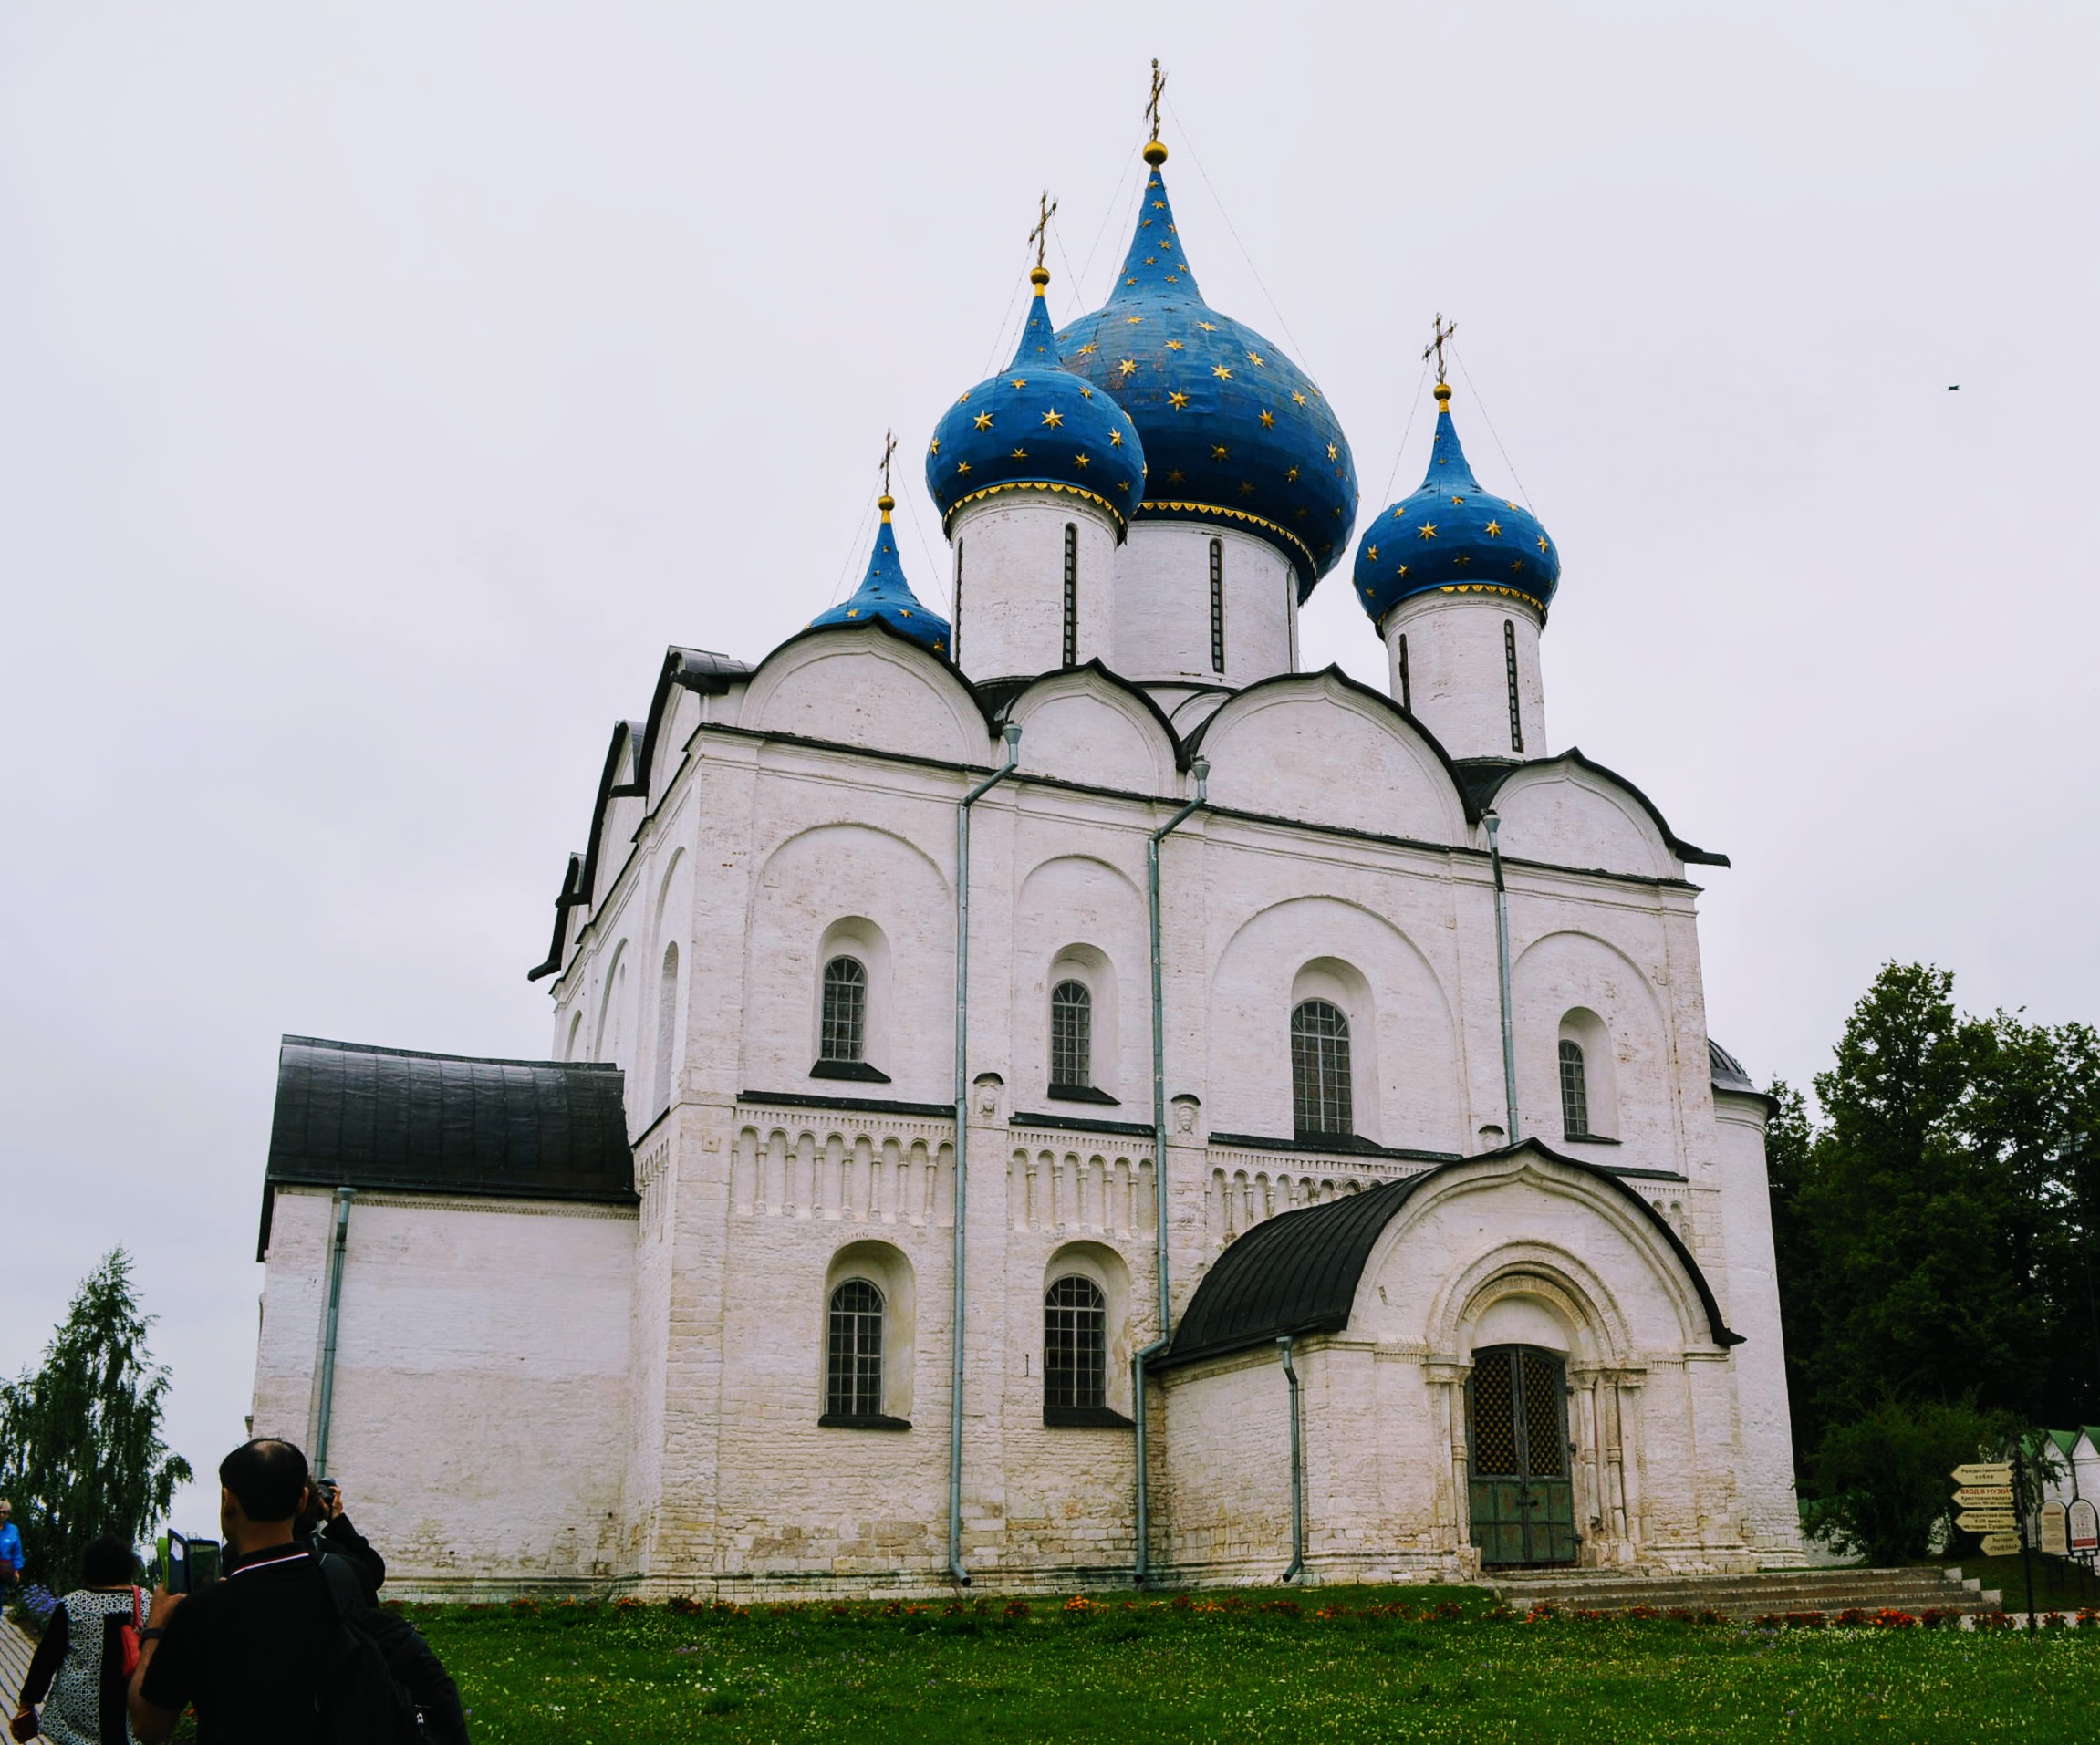 Inside the Suzdal Kremlin